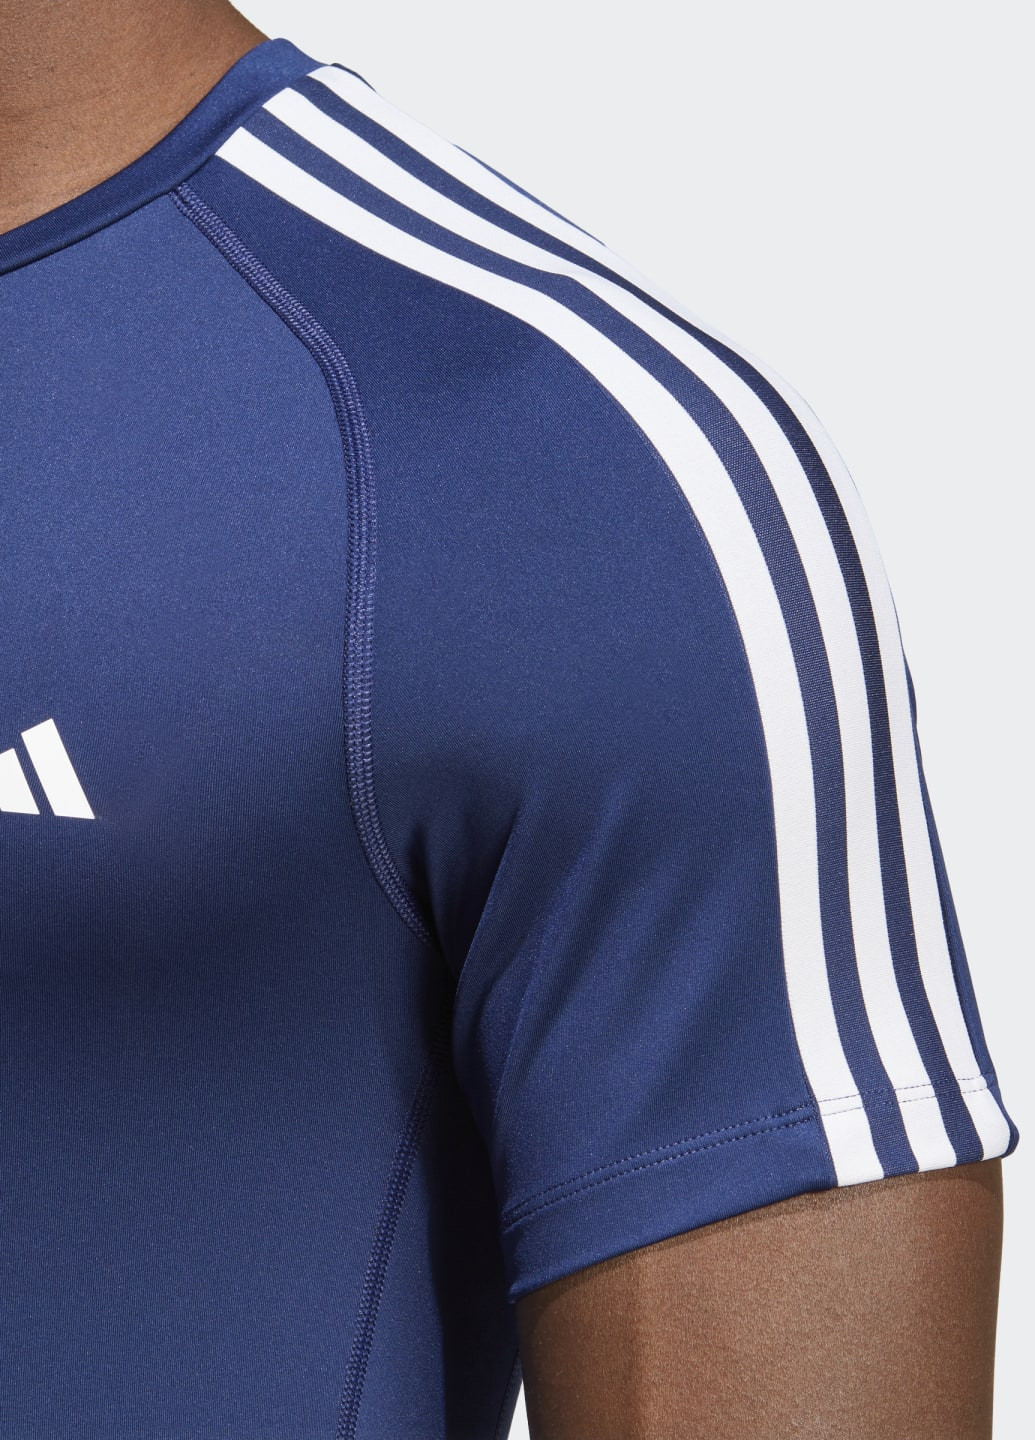 Синя футболка для тренувань techfit 3-stripes adidas